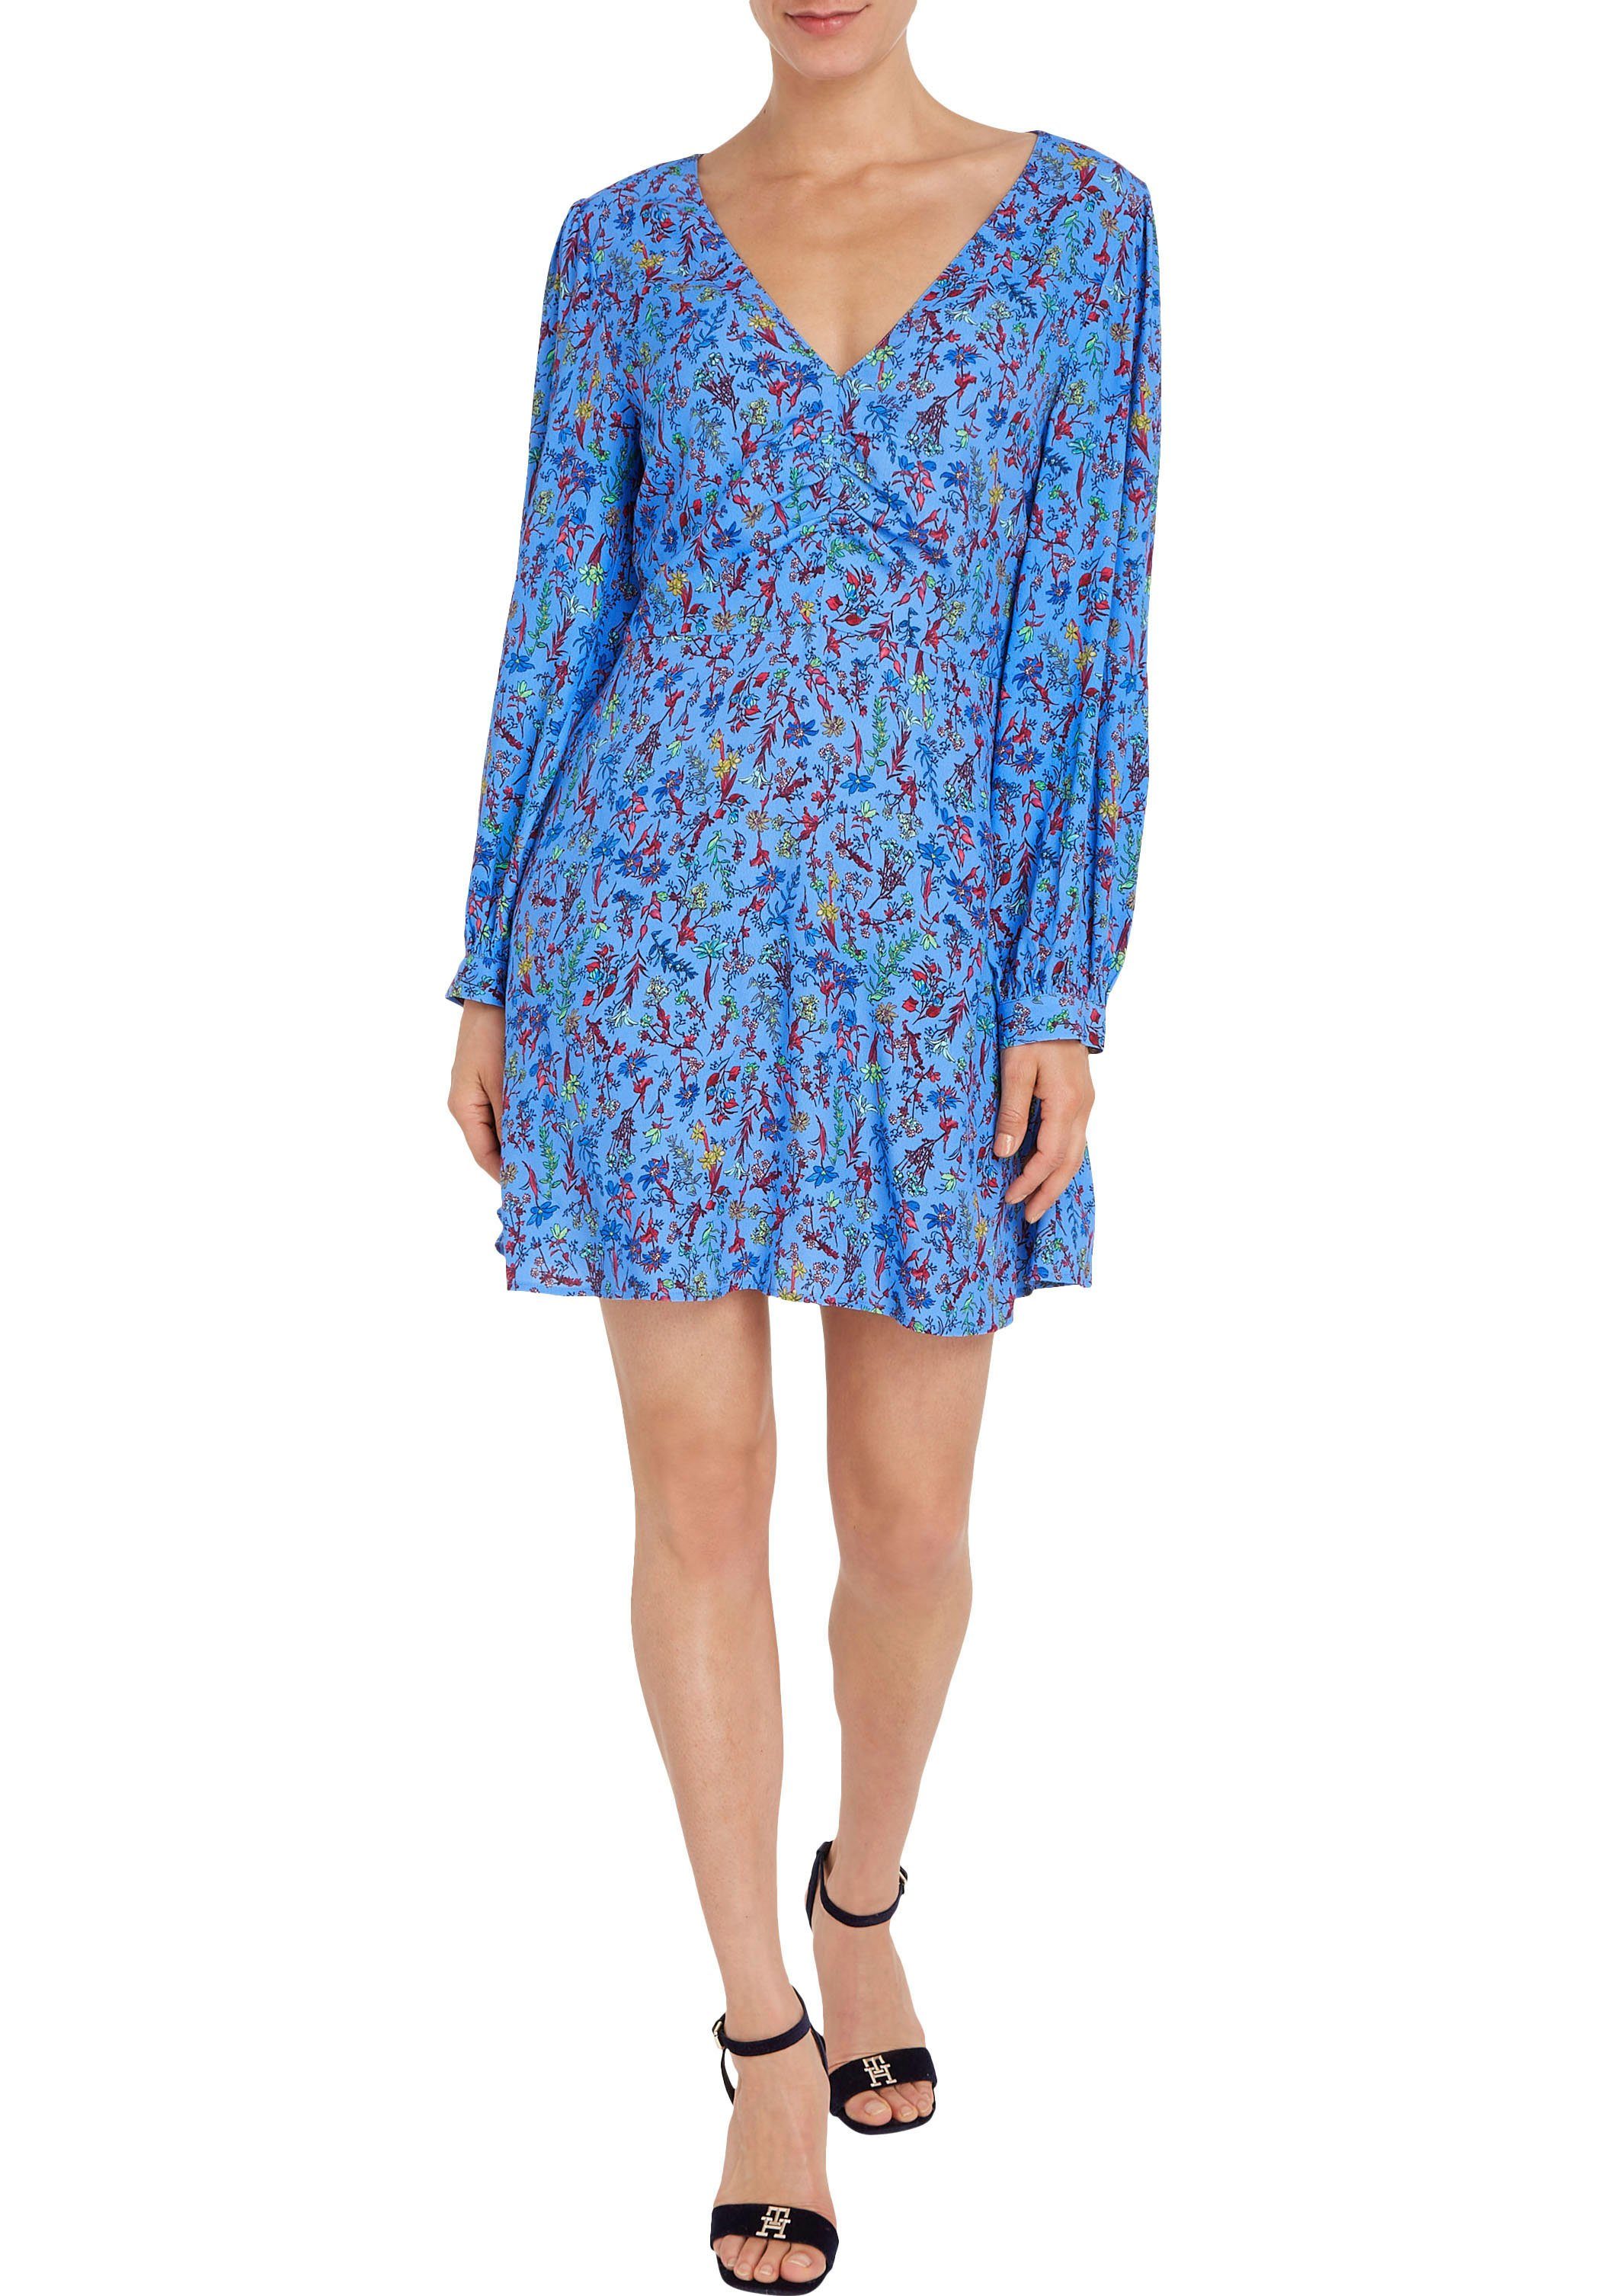 Shirtkleid SHORT Floral-Print FLORAL farbenfrohem Hilfiger VIS Tommy LS DRESS in